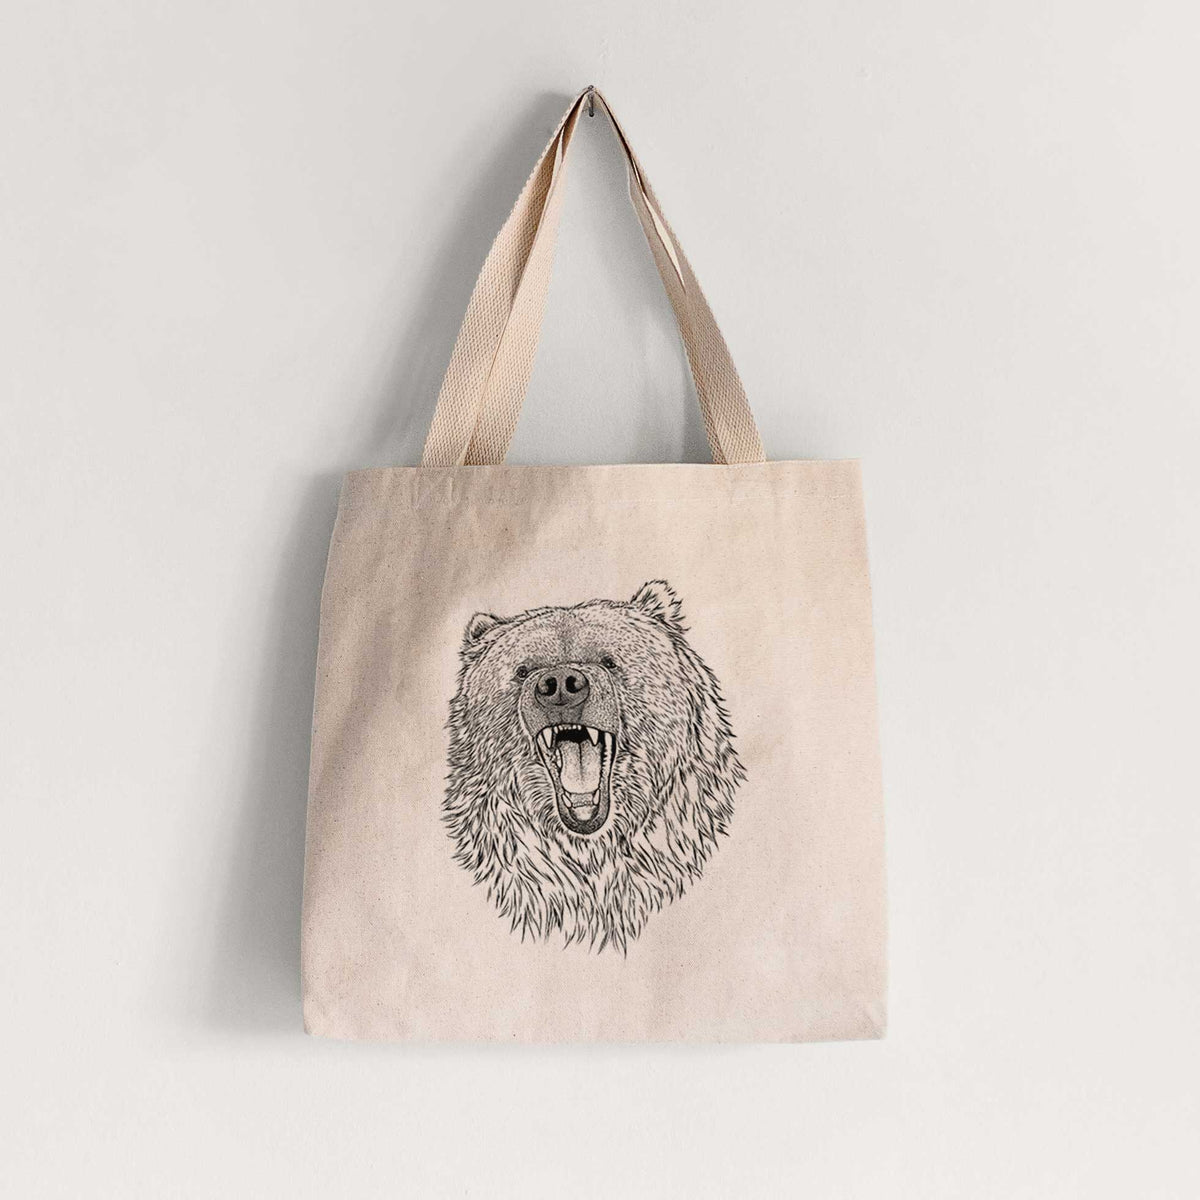 Ursus arctos - Kodiak Bear - Tote Bag